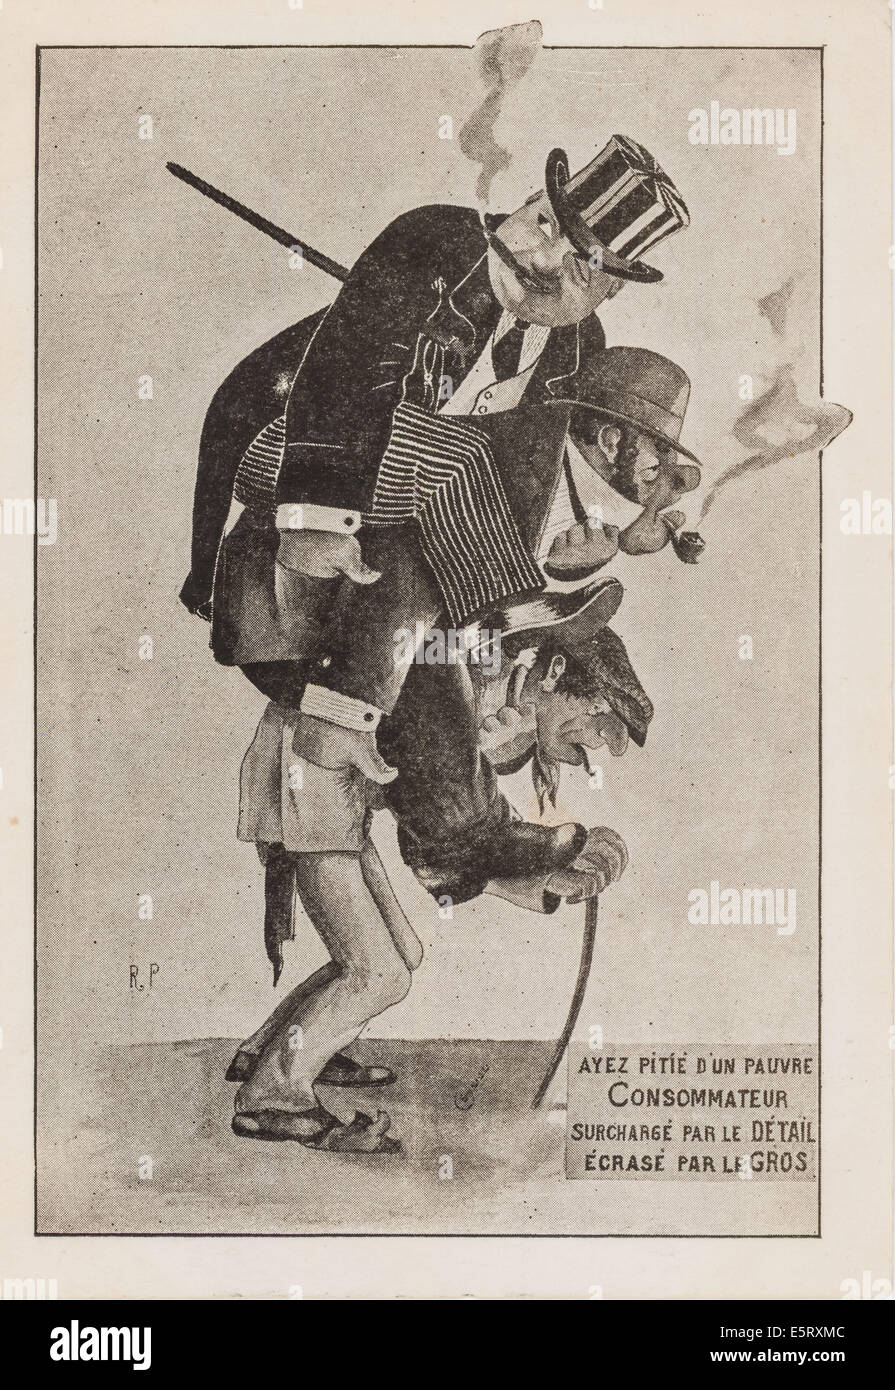 Ancienne carte postale humoristique à partir de 1900, la caricature à propos de détail et de gros, les marges de profit et de consommation, il montre un consommateur Banque D'Images